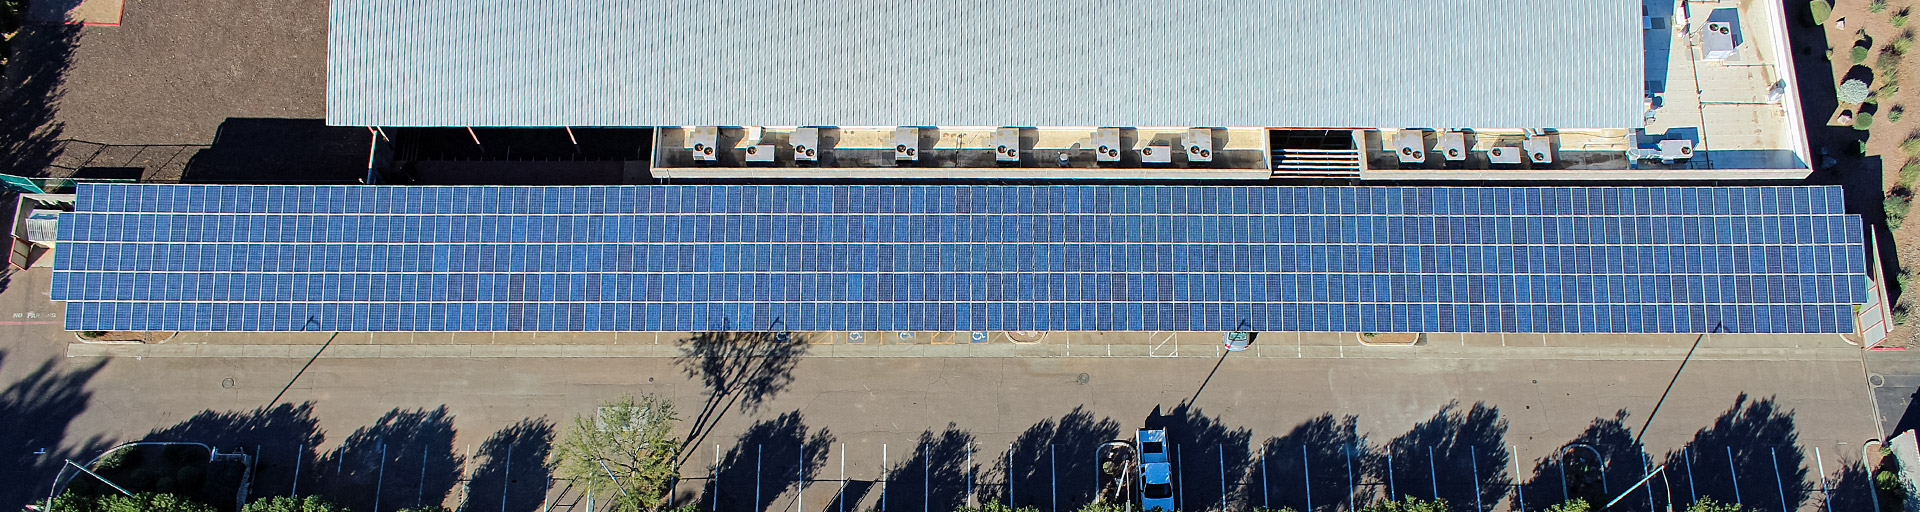 Parking Lot 59 - East - SDSP - solar